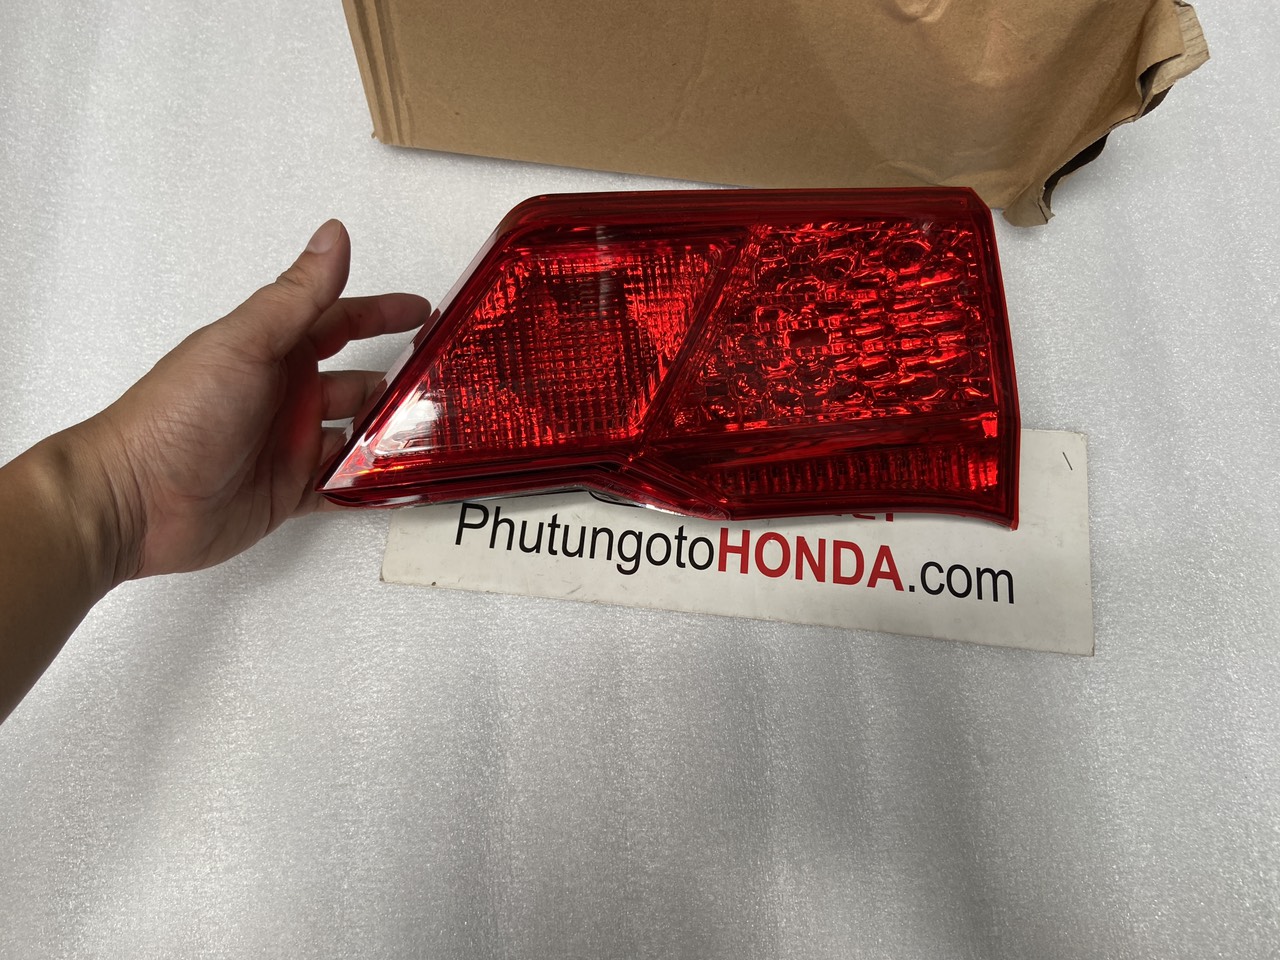 Đèn hậu miếng trong trên cốp xe Honda City Phiên bản Nhật - Thanh Lý